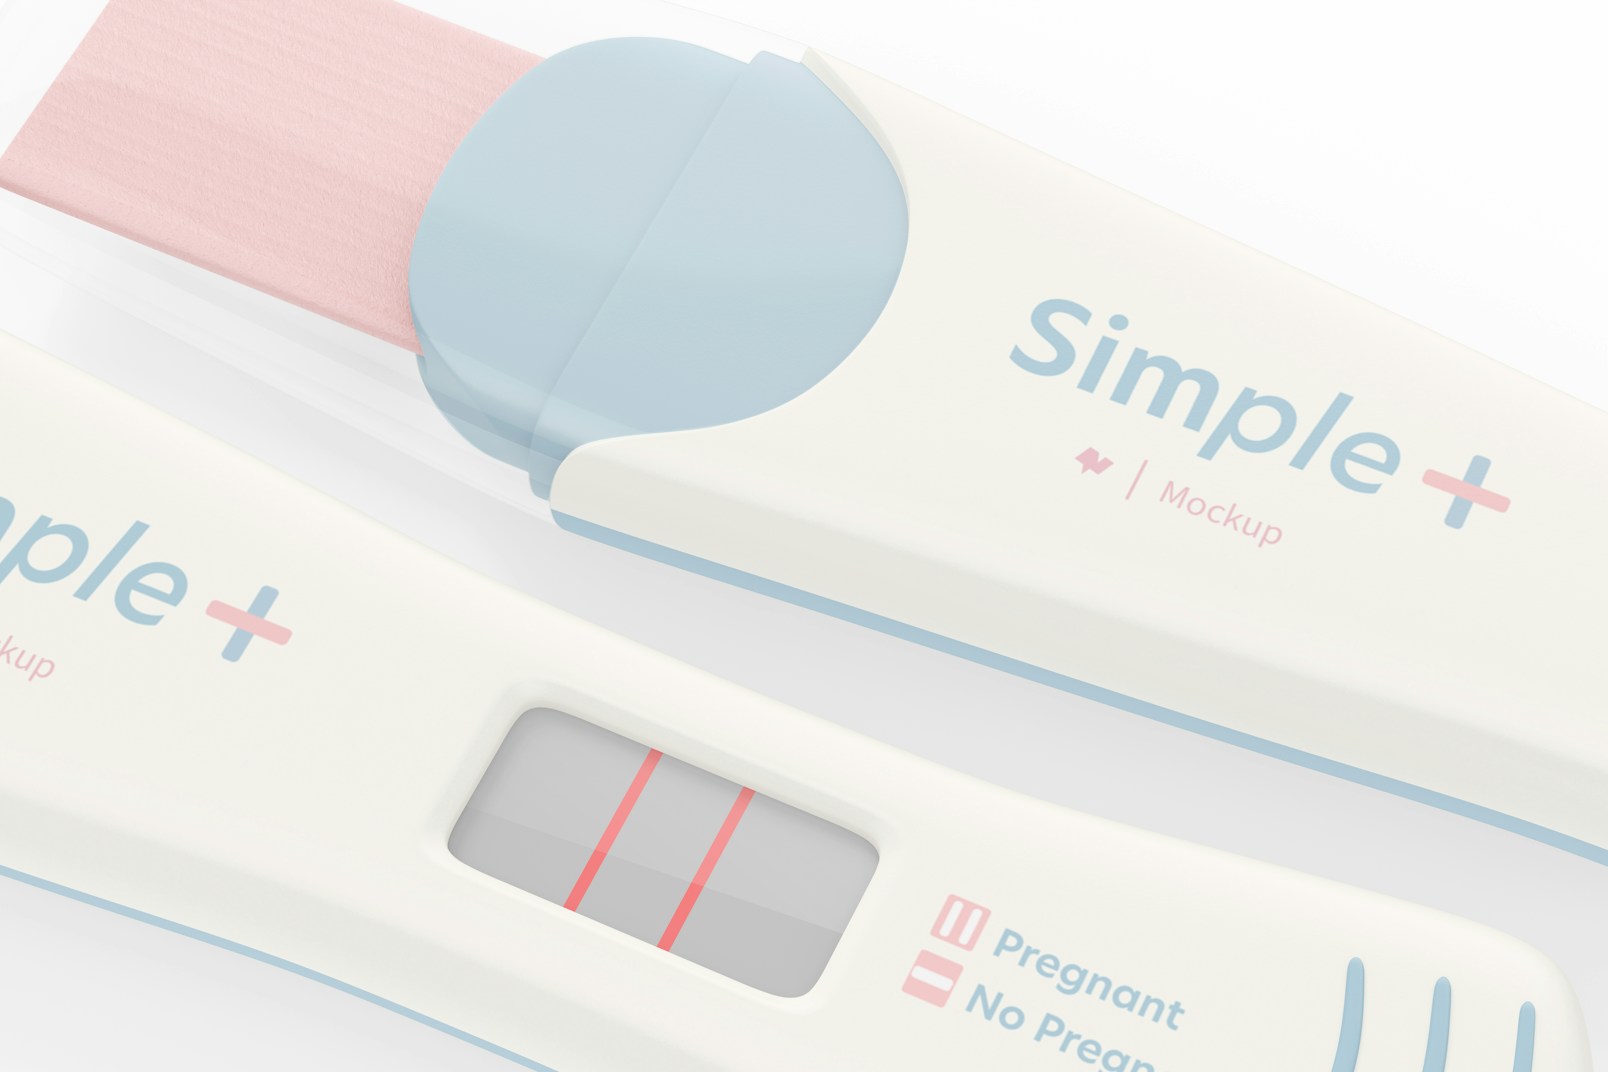 Digital Pregnancy Test Mockup, Close Up